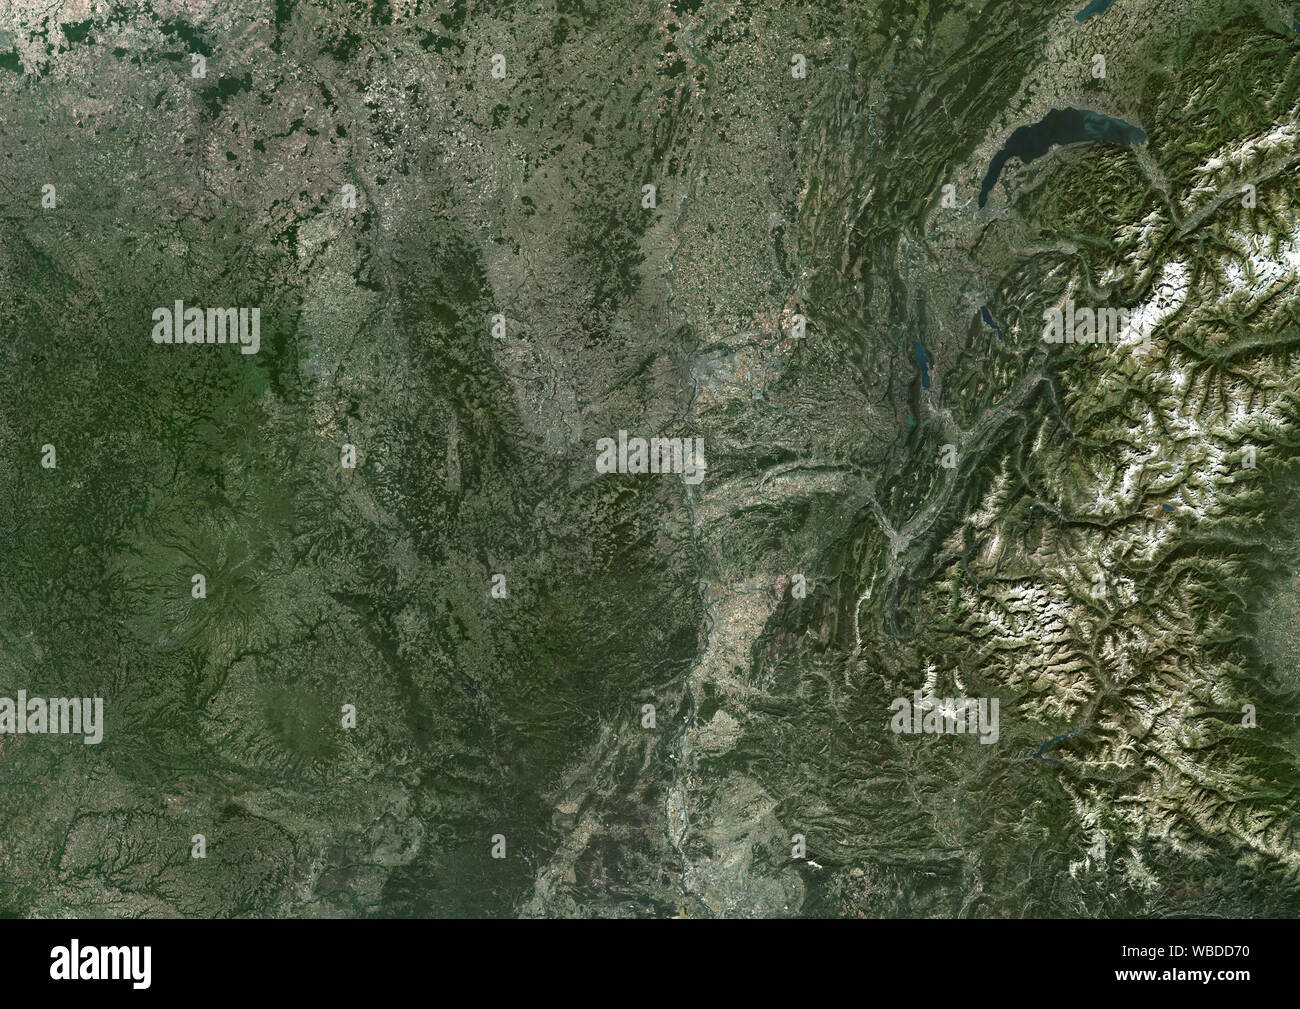 Colore immagine satellitare della Auvergne-Rhone-Alpes regione nel sud-est-Francia centrale. Questa immagine è stata elaborata sulla base dei dati acquisiti nel 2018 da Sentinel-2 satelliti. Foto Stock